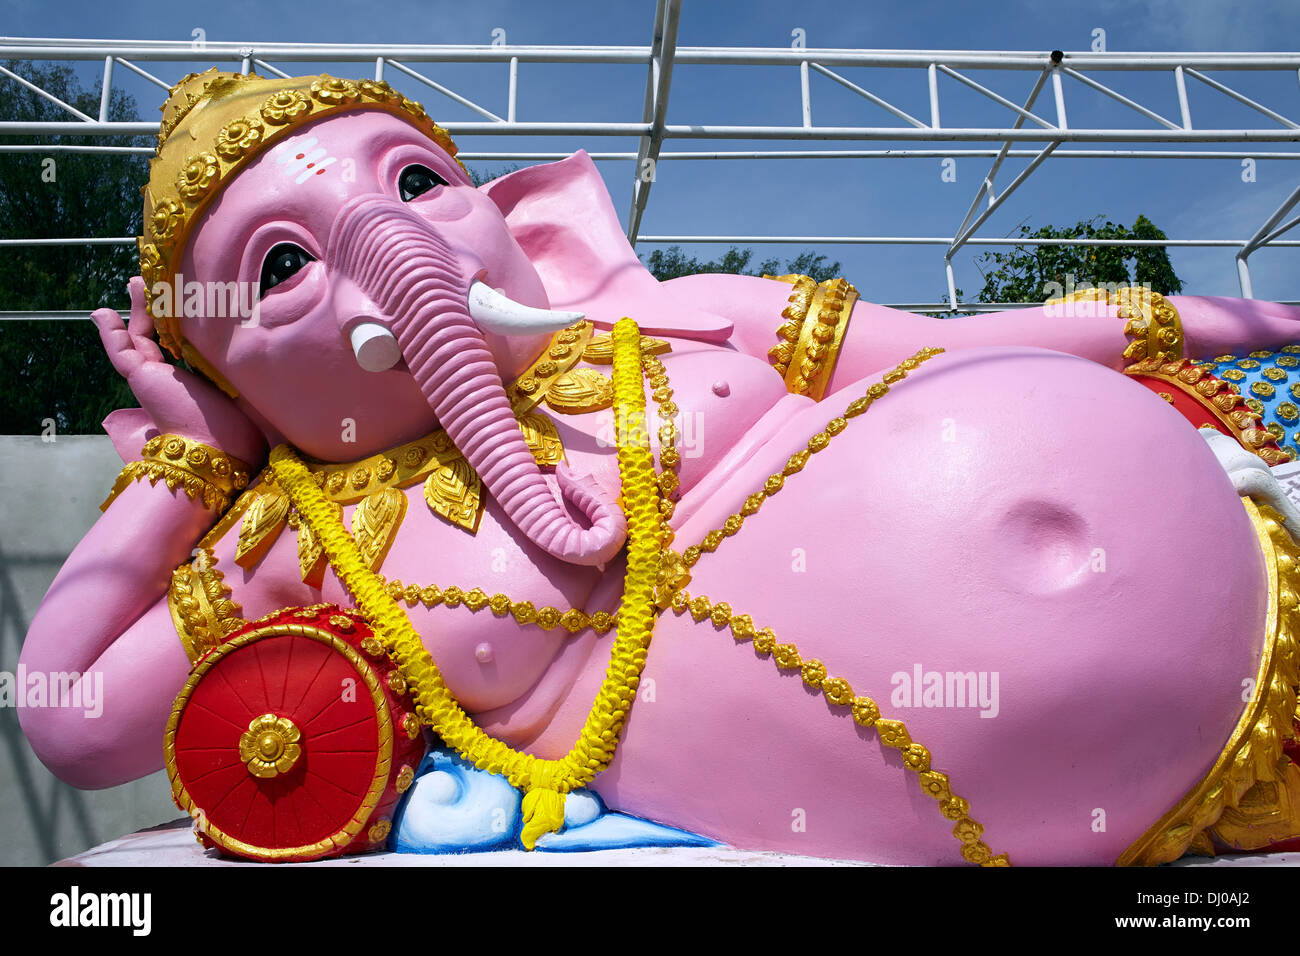 Ganesha elephant headed god; Reclining pink Ganesha deity statue Thailand S. E. Asia Stock Photo